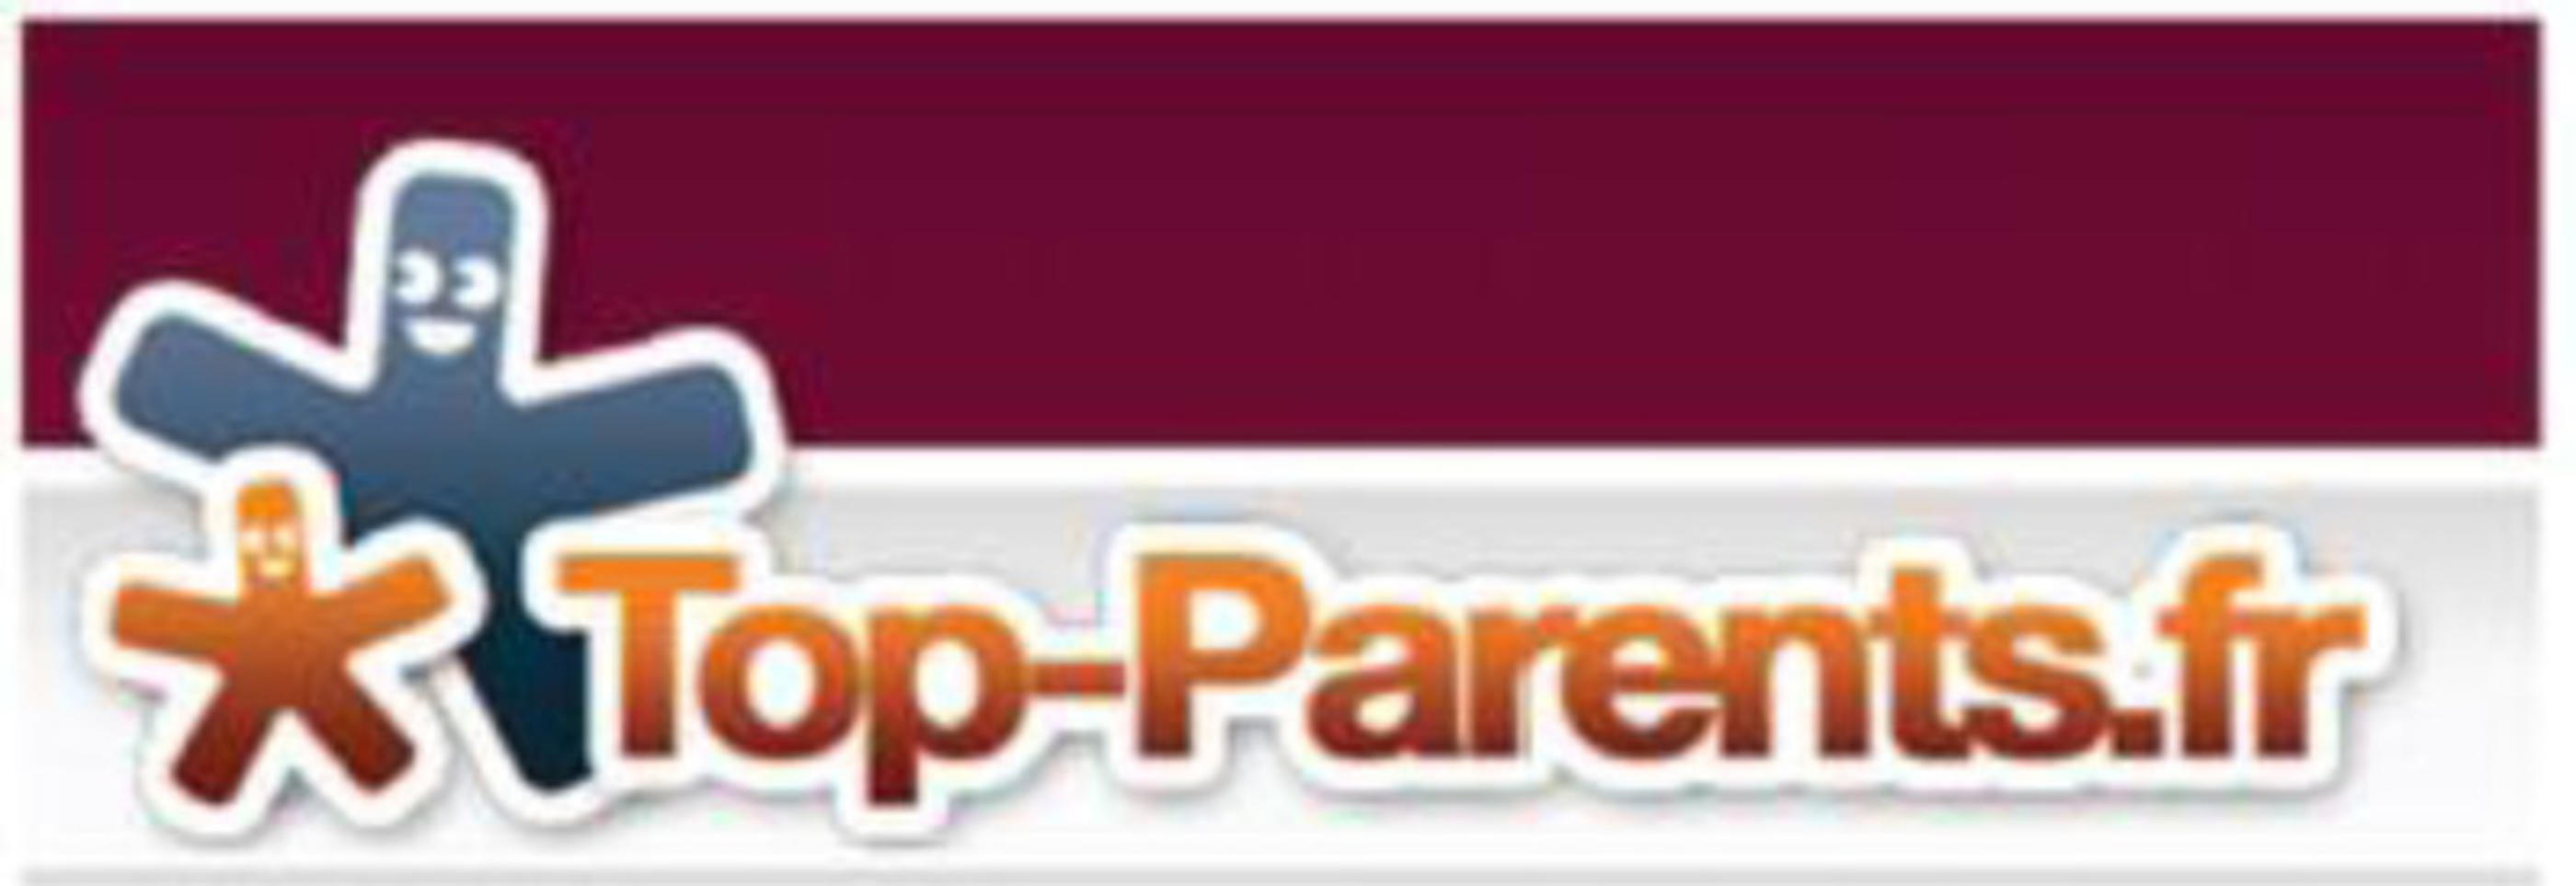 La sélection Top parents.fr Mars 2014